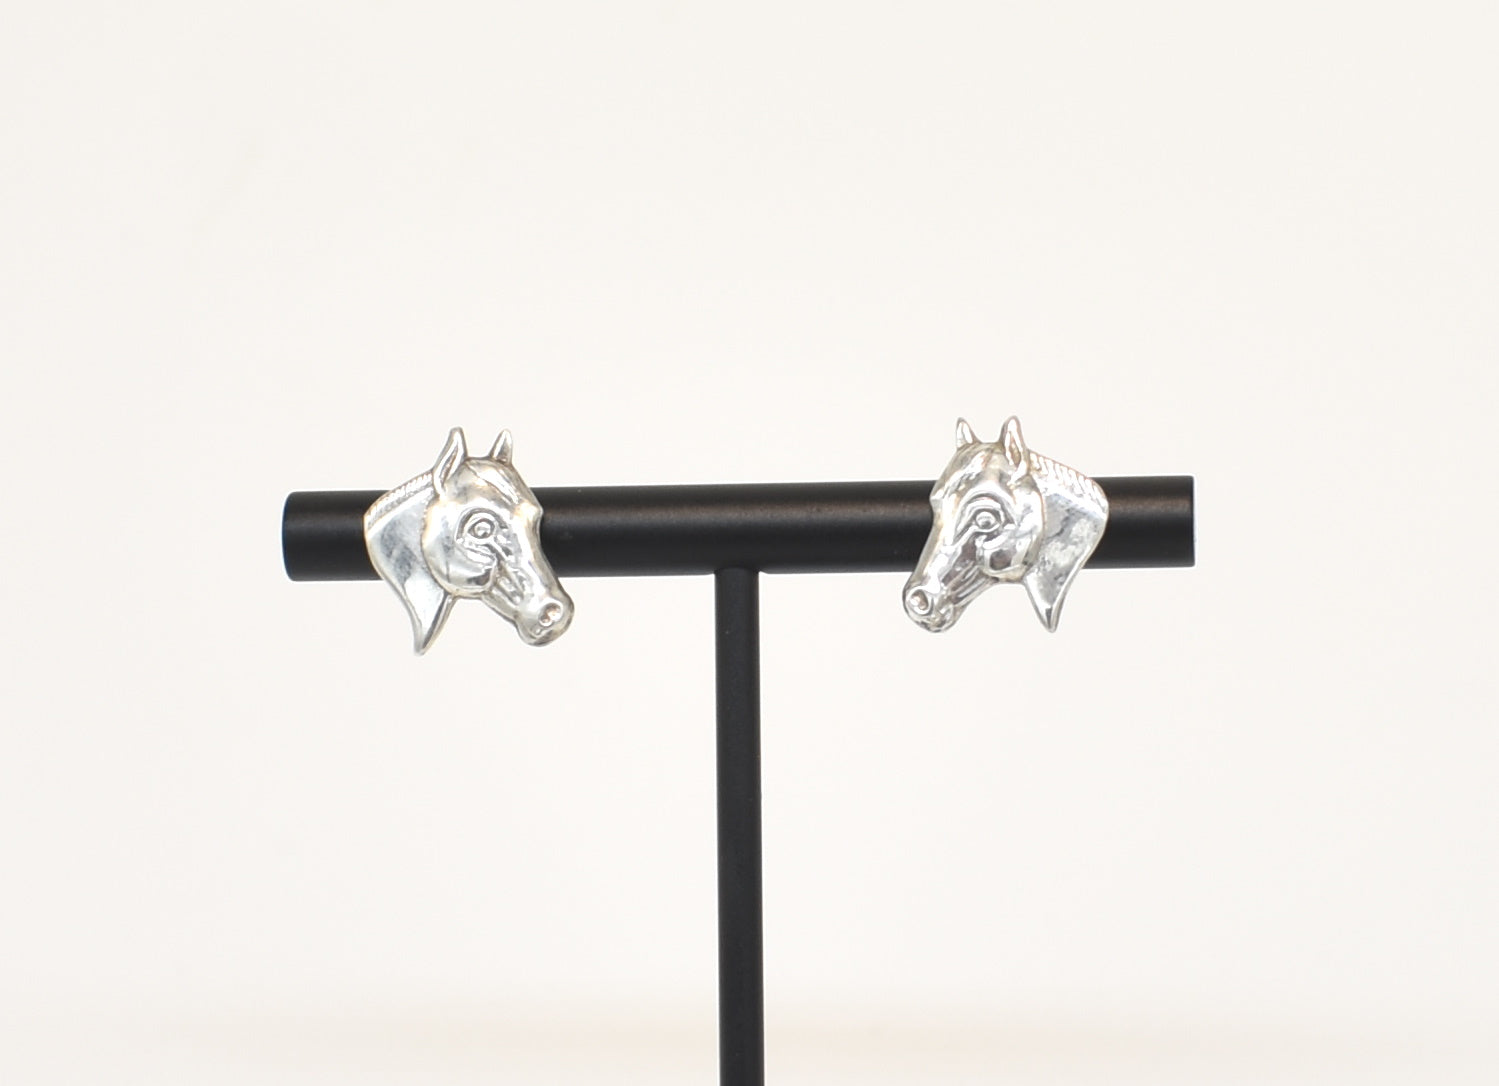 Horse Head Sterling Silver Stud Earrings